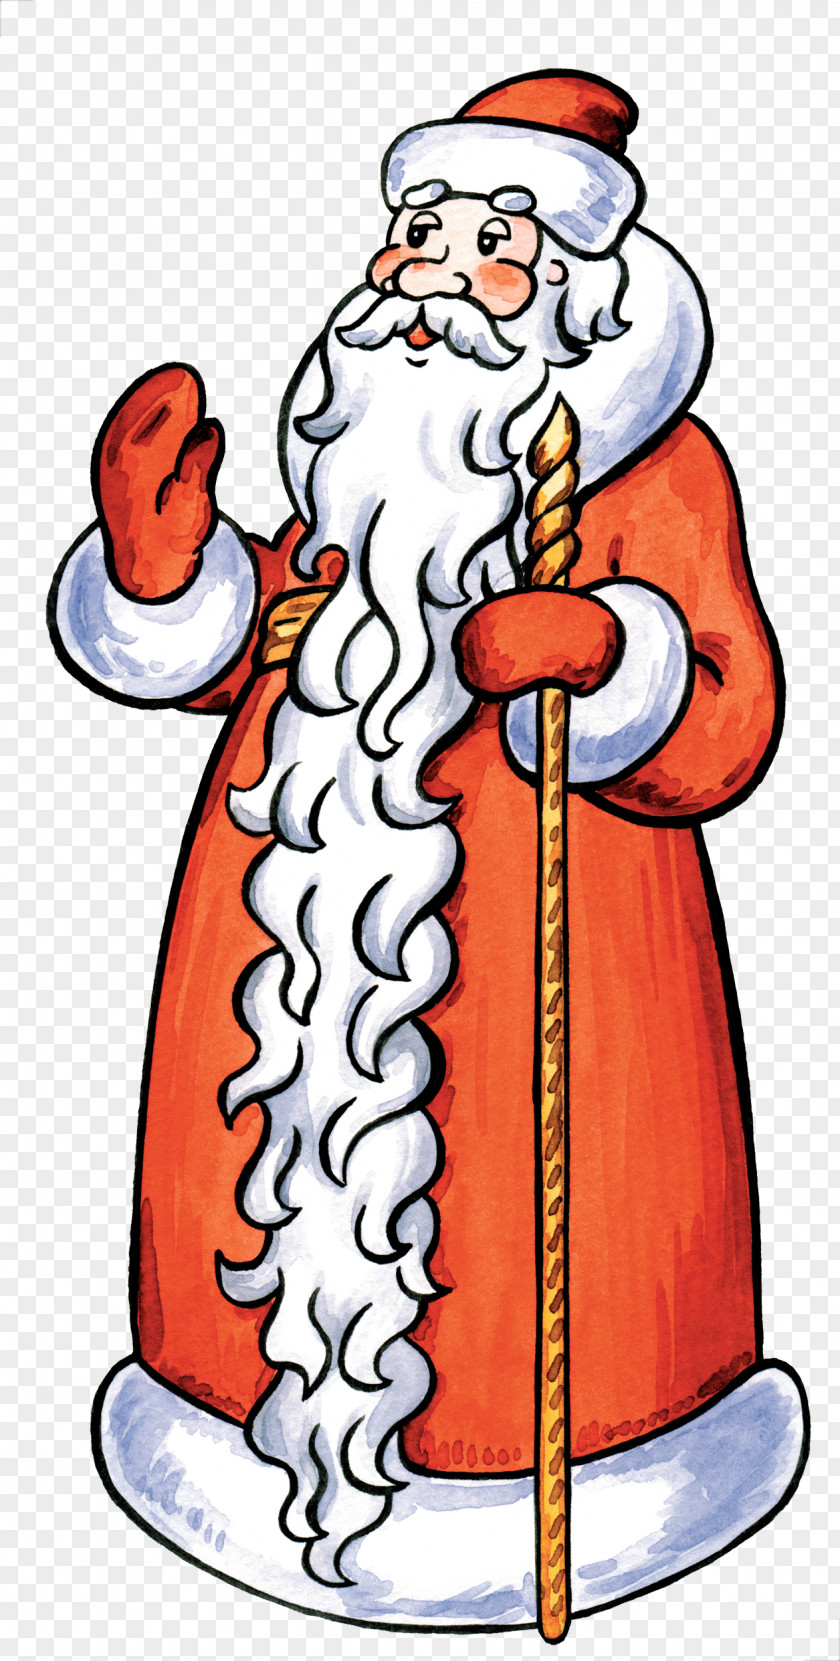 Santa Claus Ded Moroz Snegurochka Clip Art PNG